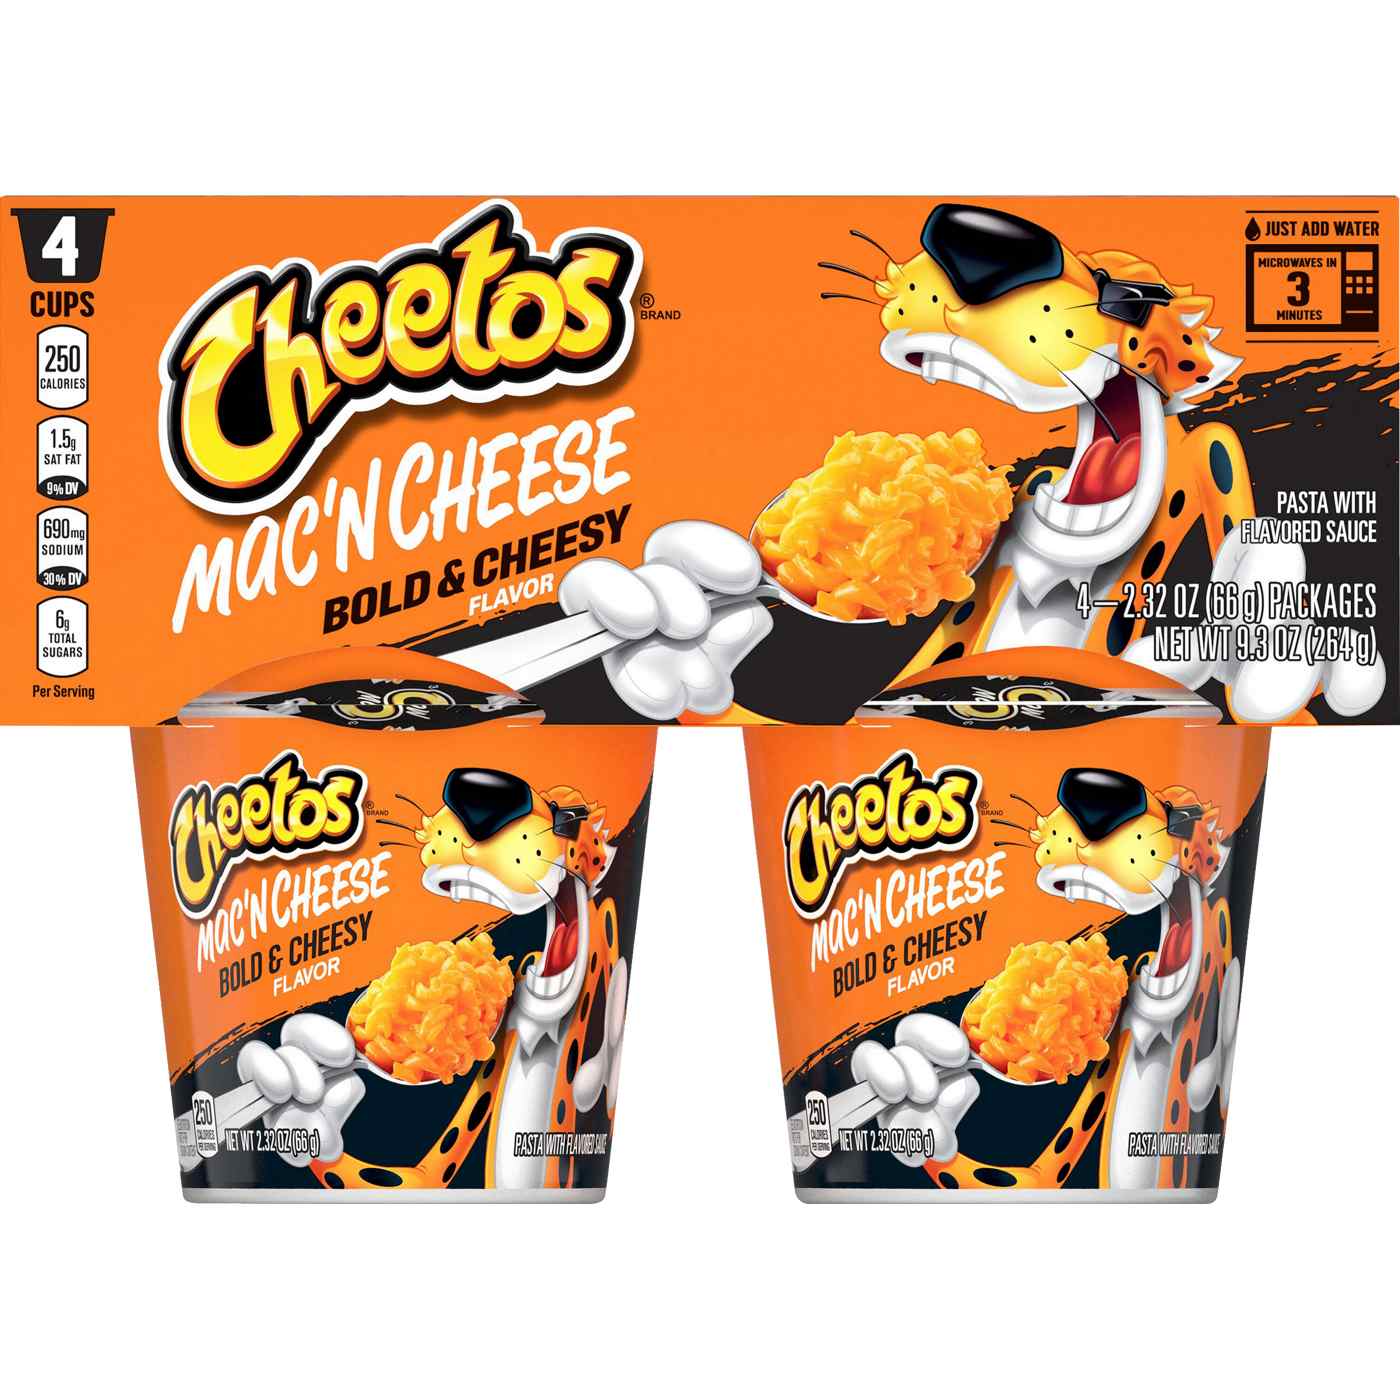 Cheetos Mac 'N Cheese Bold & Cheesy; image 1 of 3